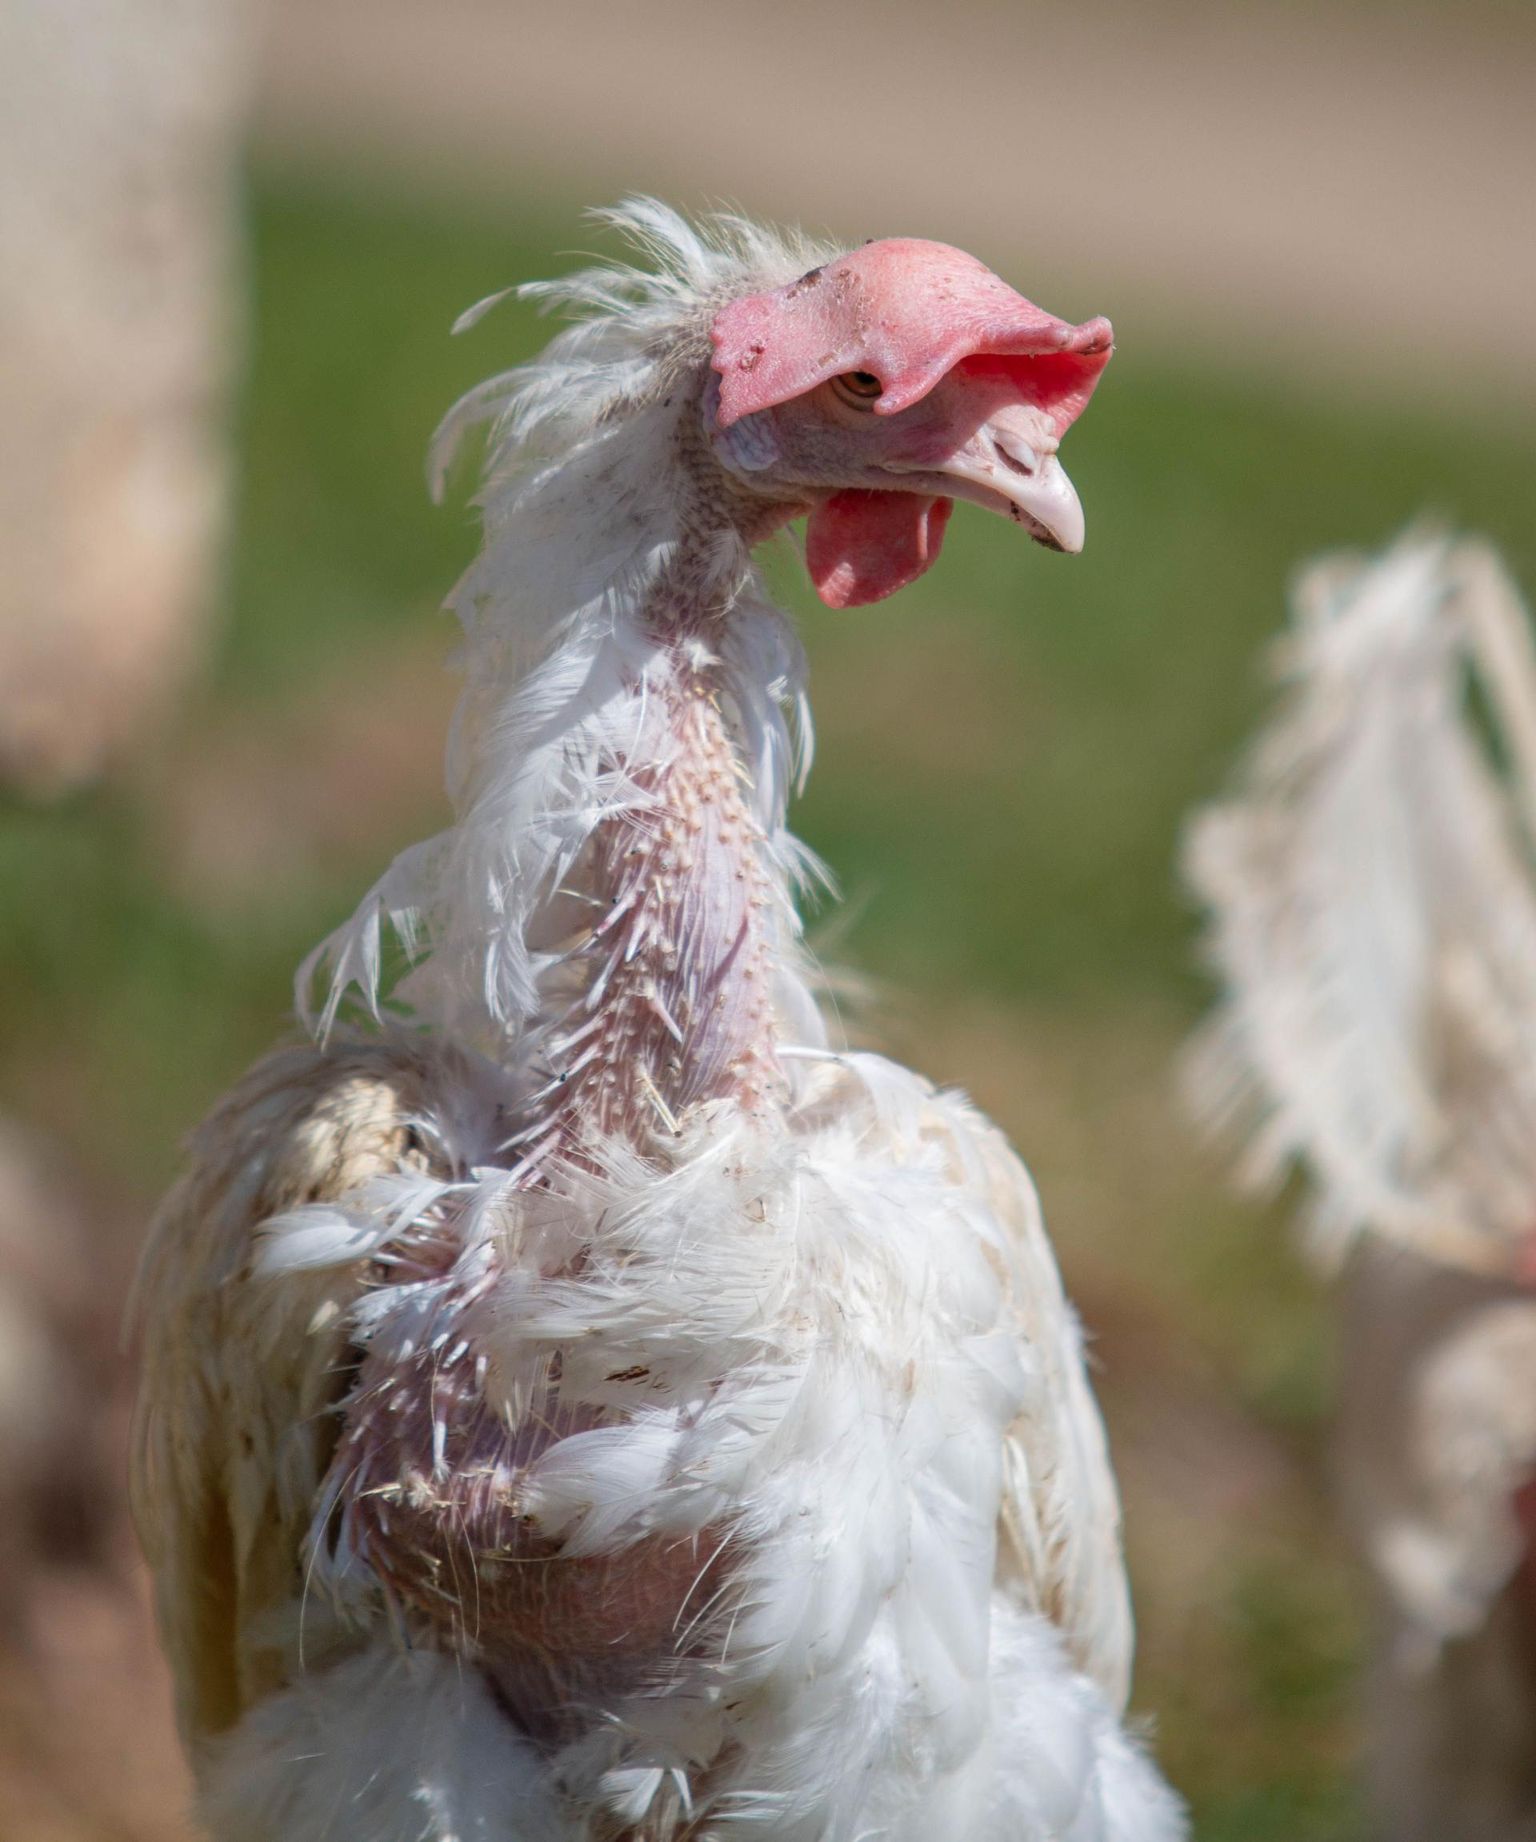 Salmonellapuhangu tõttu läksid hävitamisele kõik ettevõtte 200 000 kana. Tootmisega uuesti alustades jõuaks endise võimekuseni kahe aastaga.